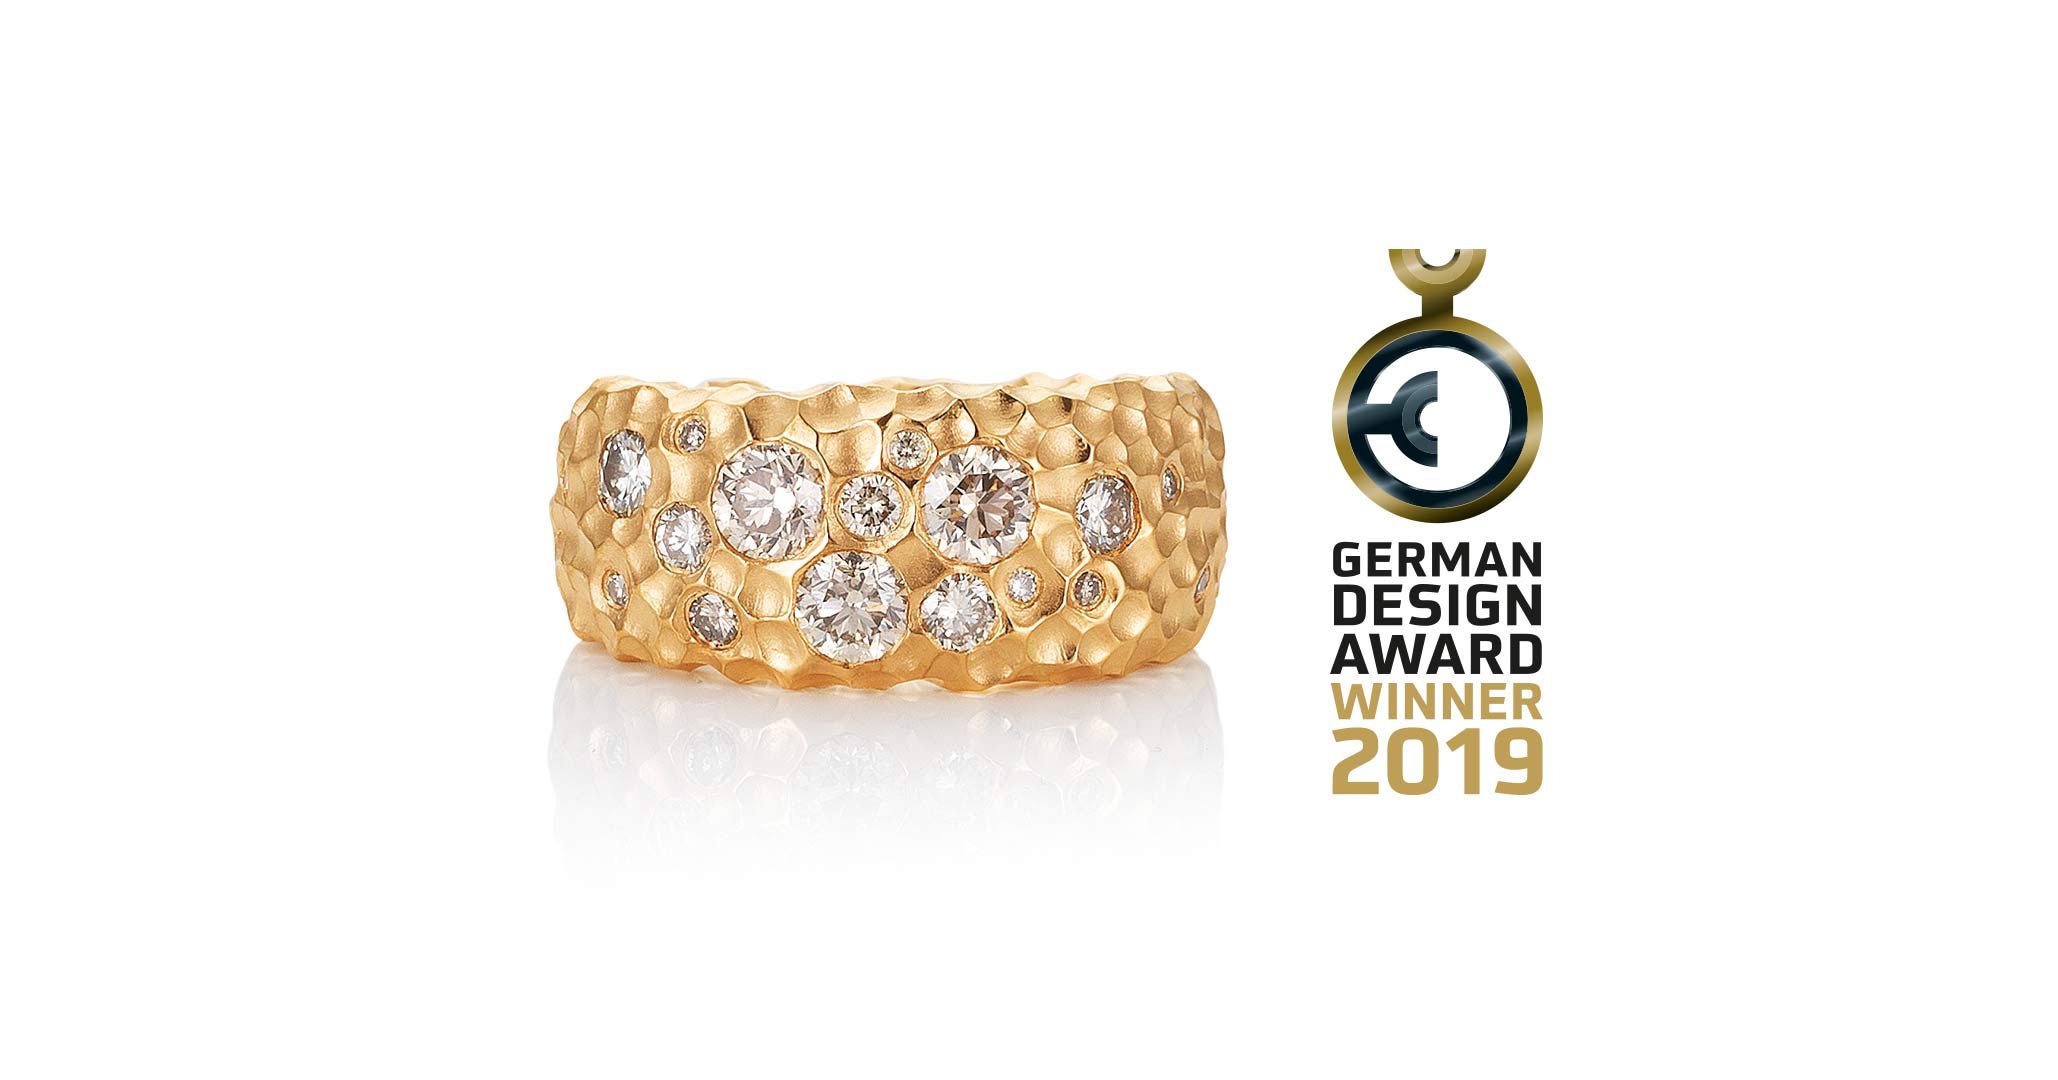 Für diesen "Morgentau"-Ring aus Roségold 750 mit pastellfarbenen Brillanten erhielt Marion Knorr den German Design Award 2019.